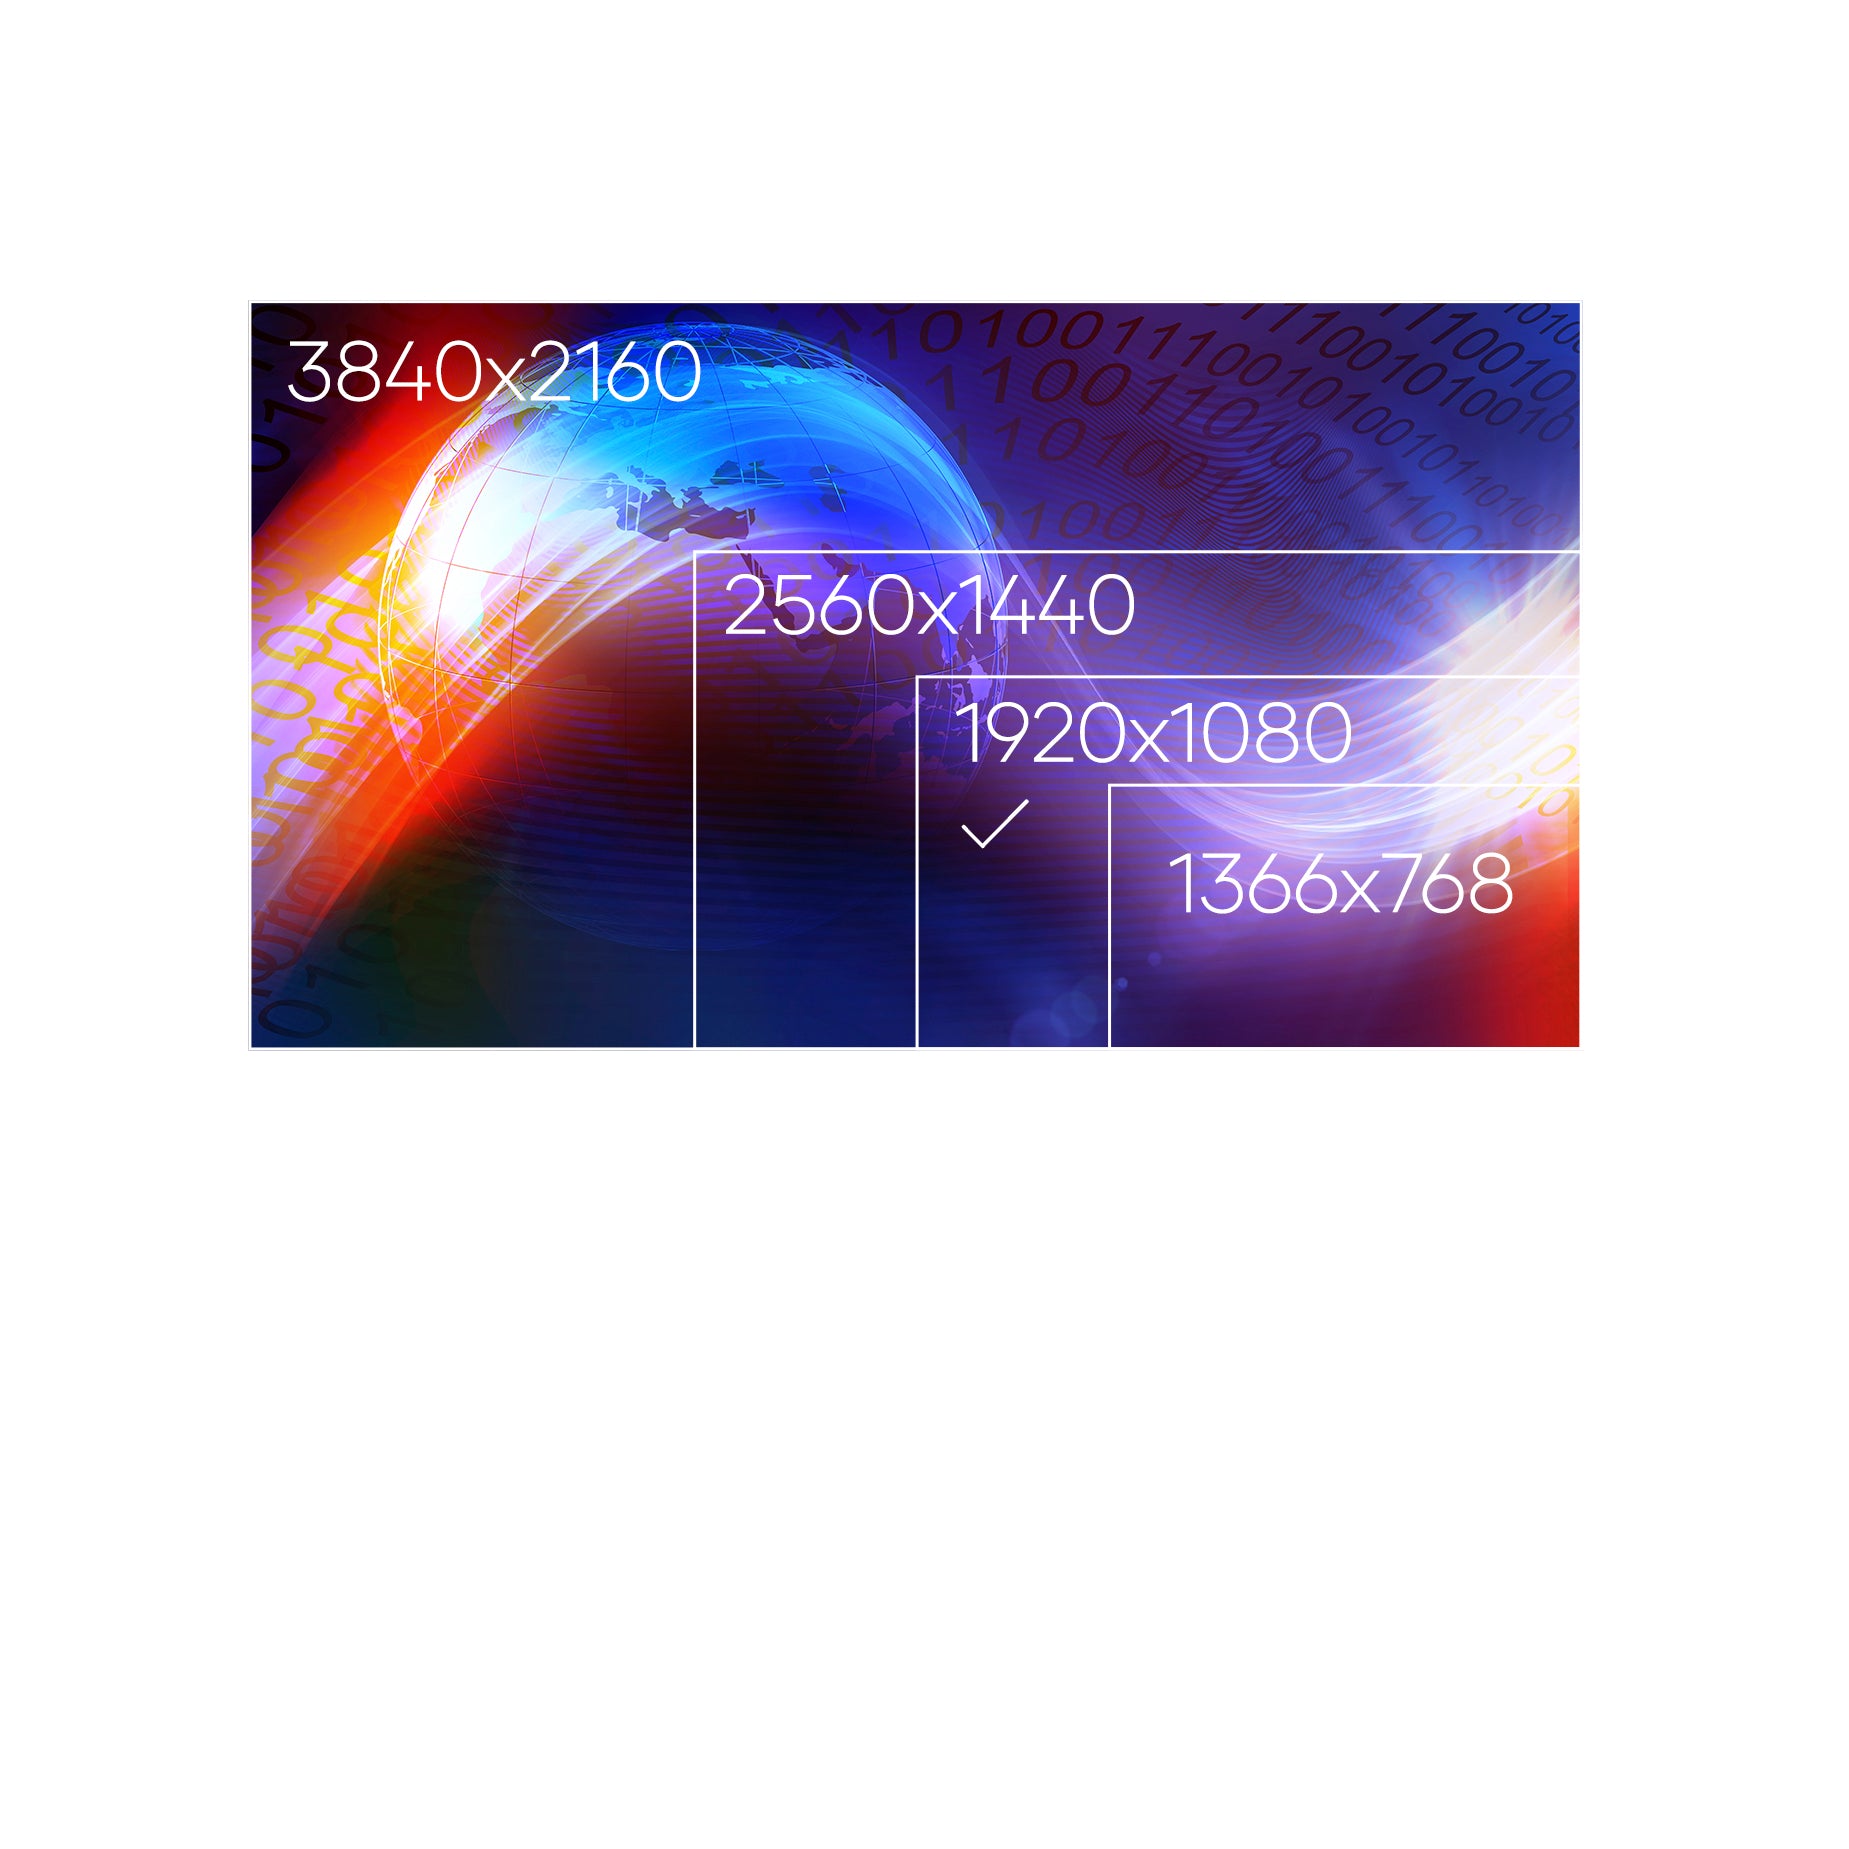 Screen For Acer ASPIRE E15 E5-576-56XA LCD LED Display Matte